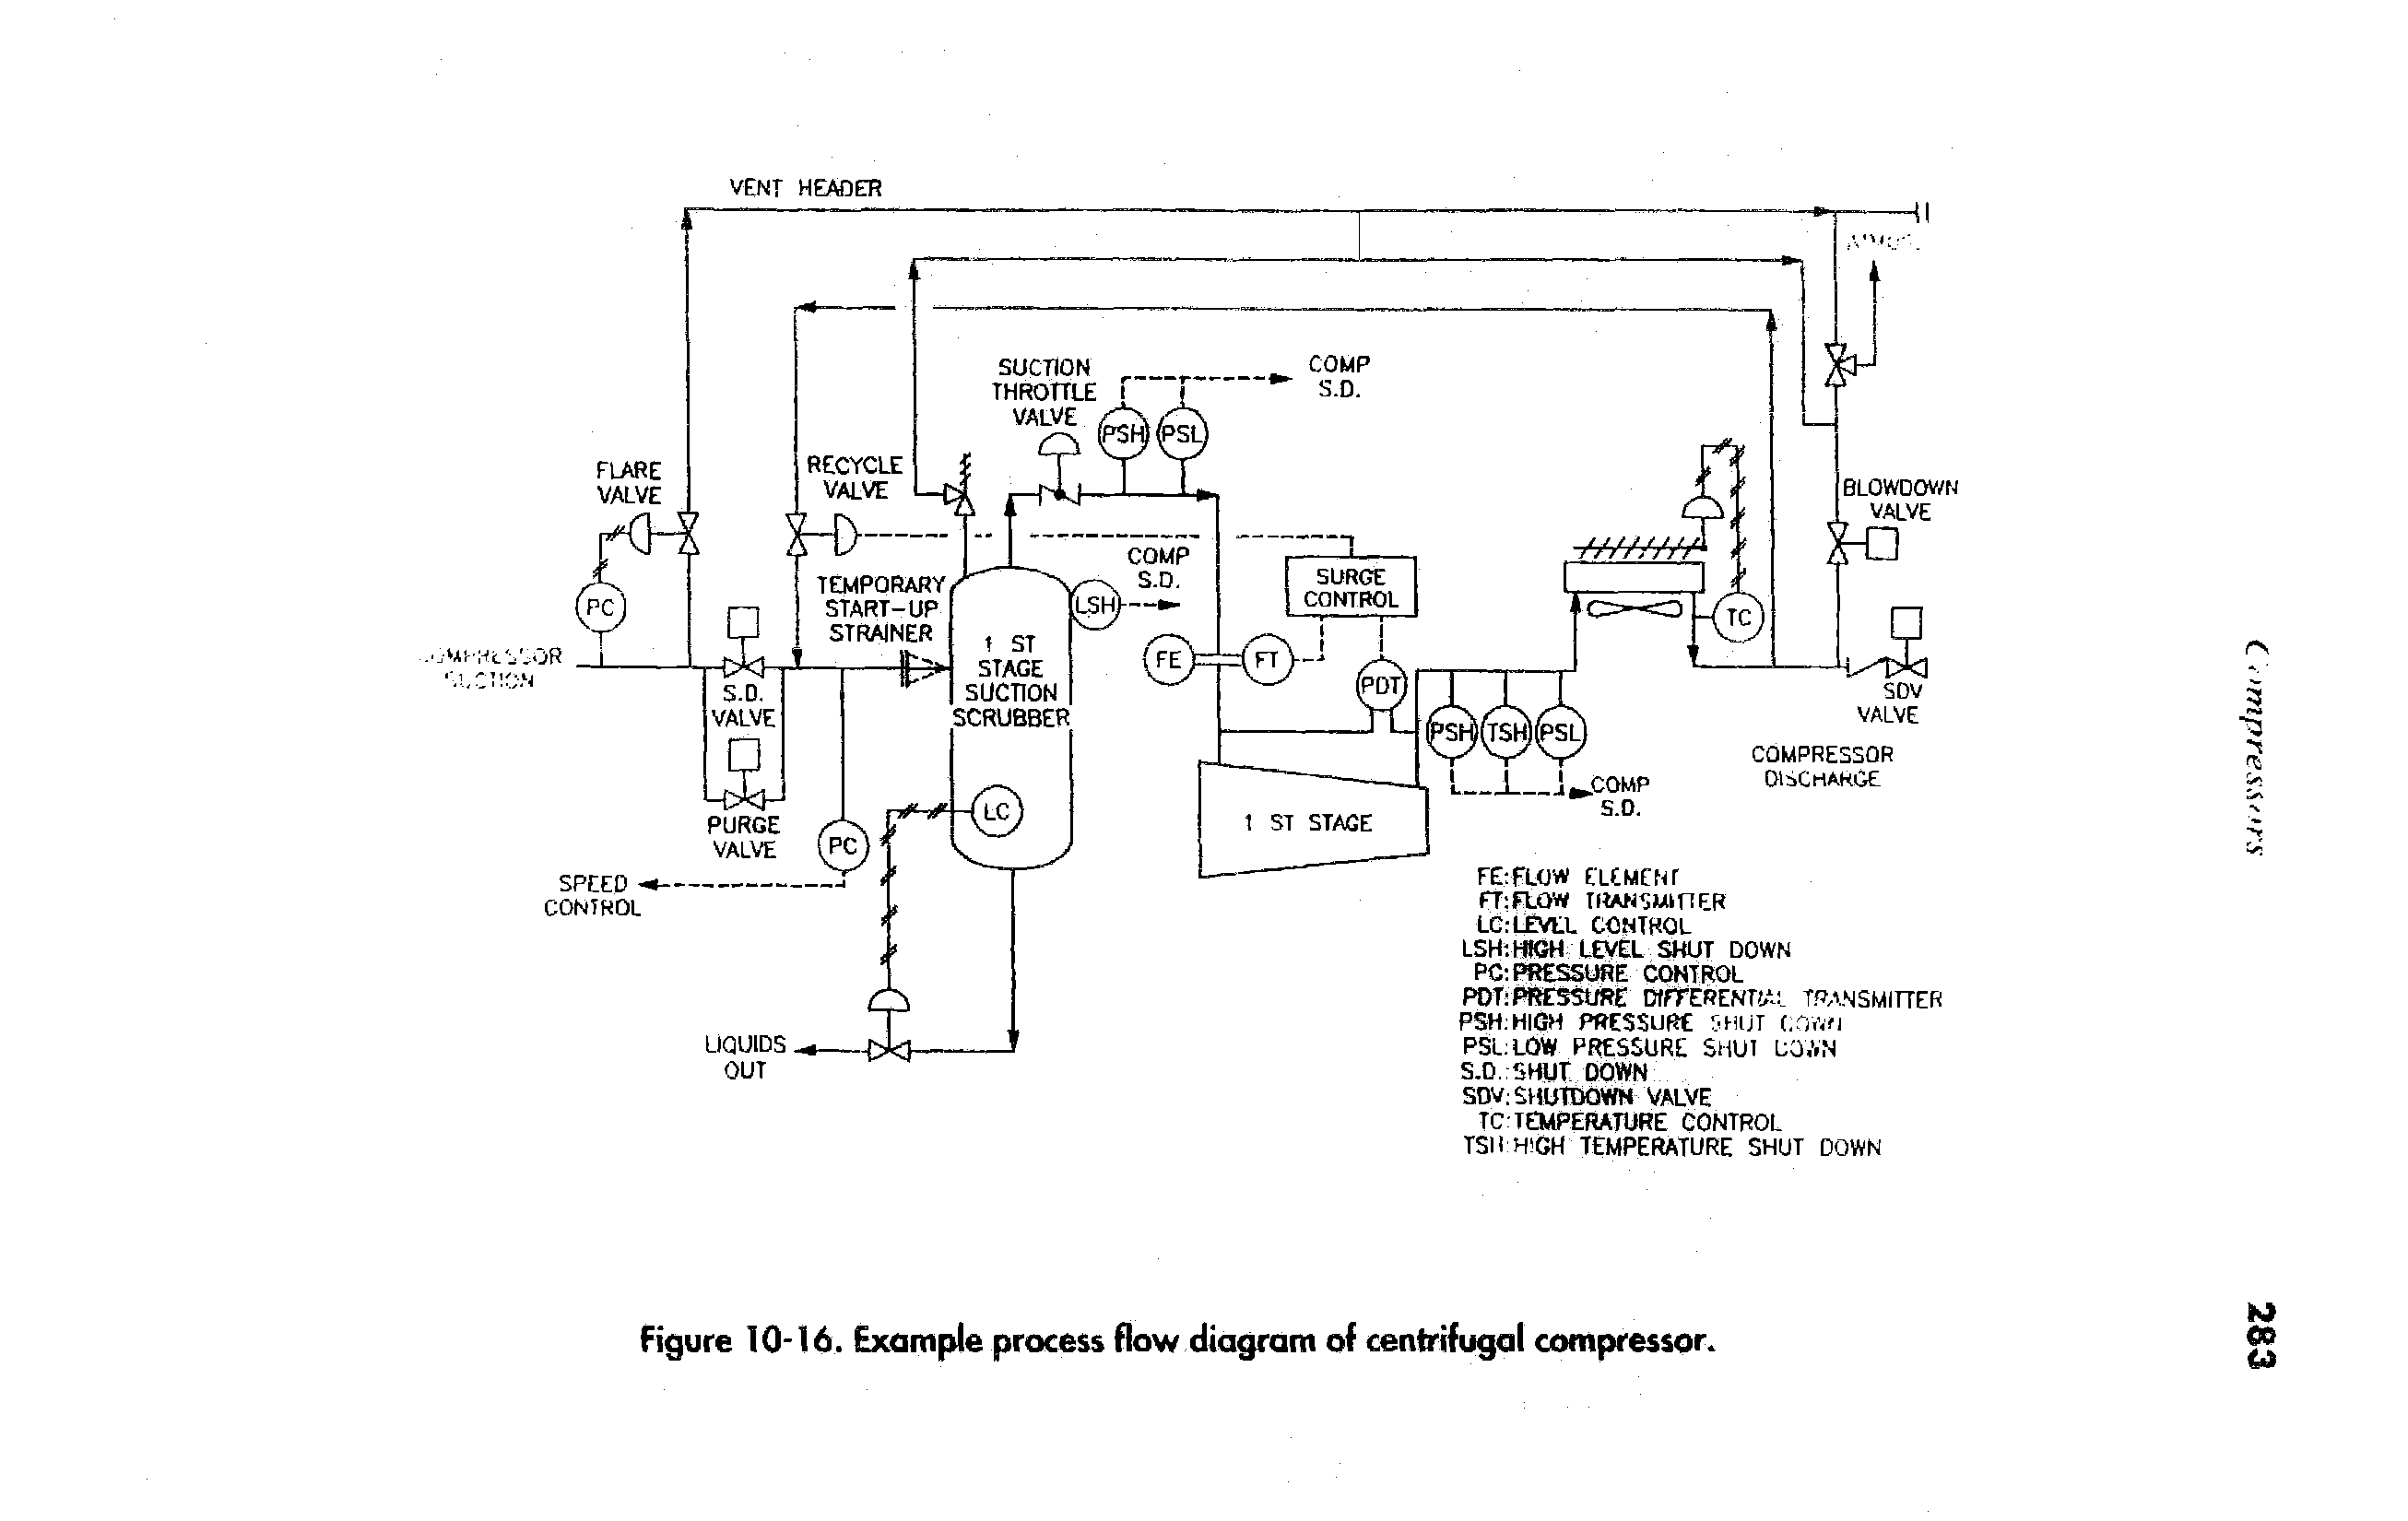 Figure 10-16. Example process flow diagram of centrifugal compressor.